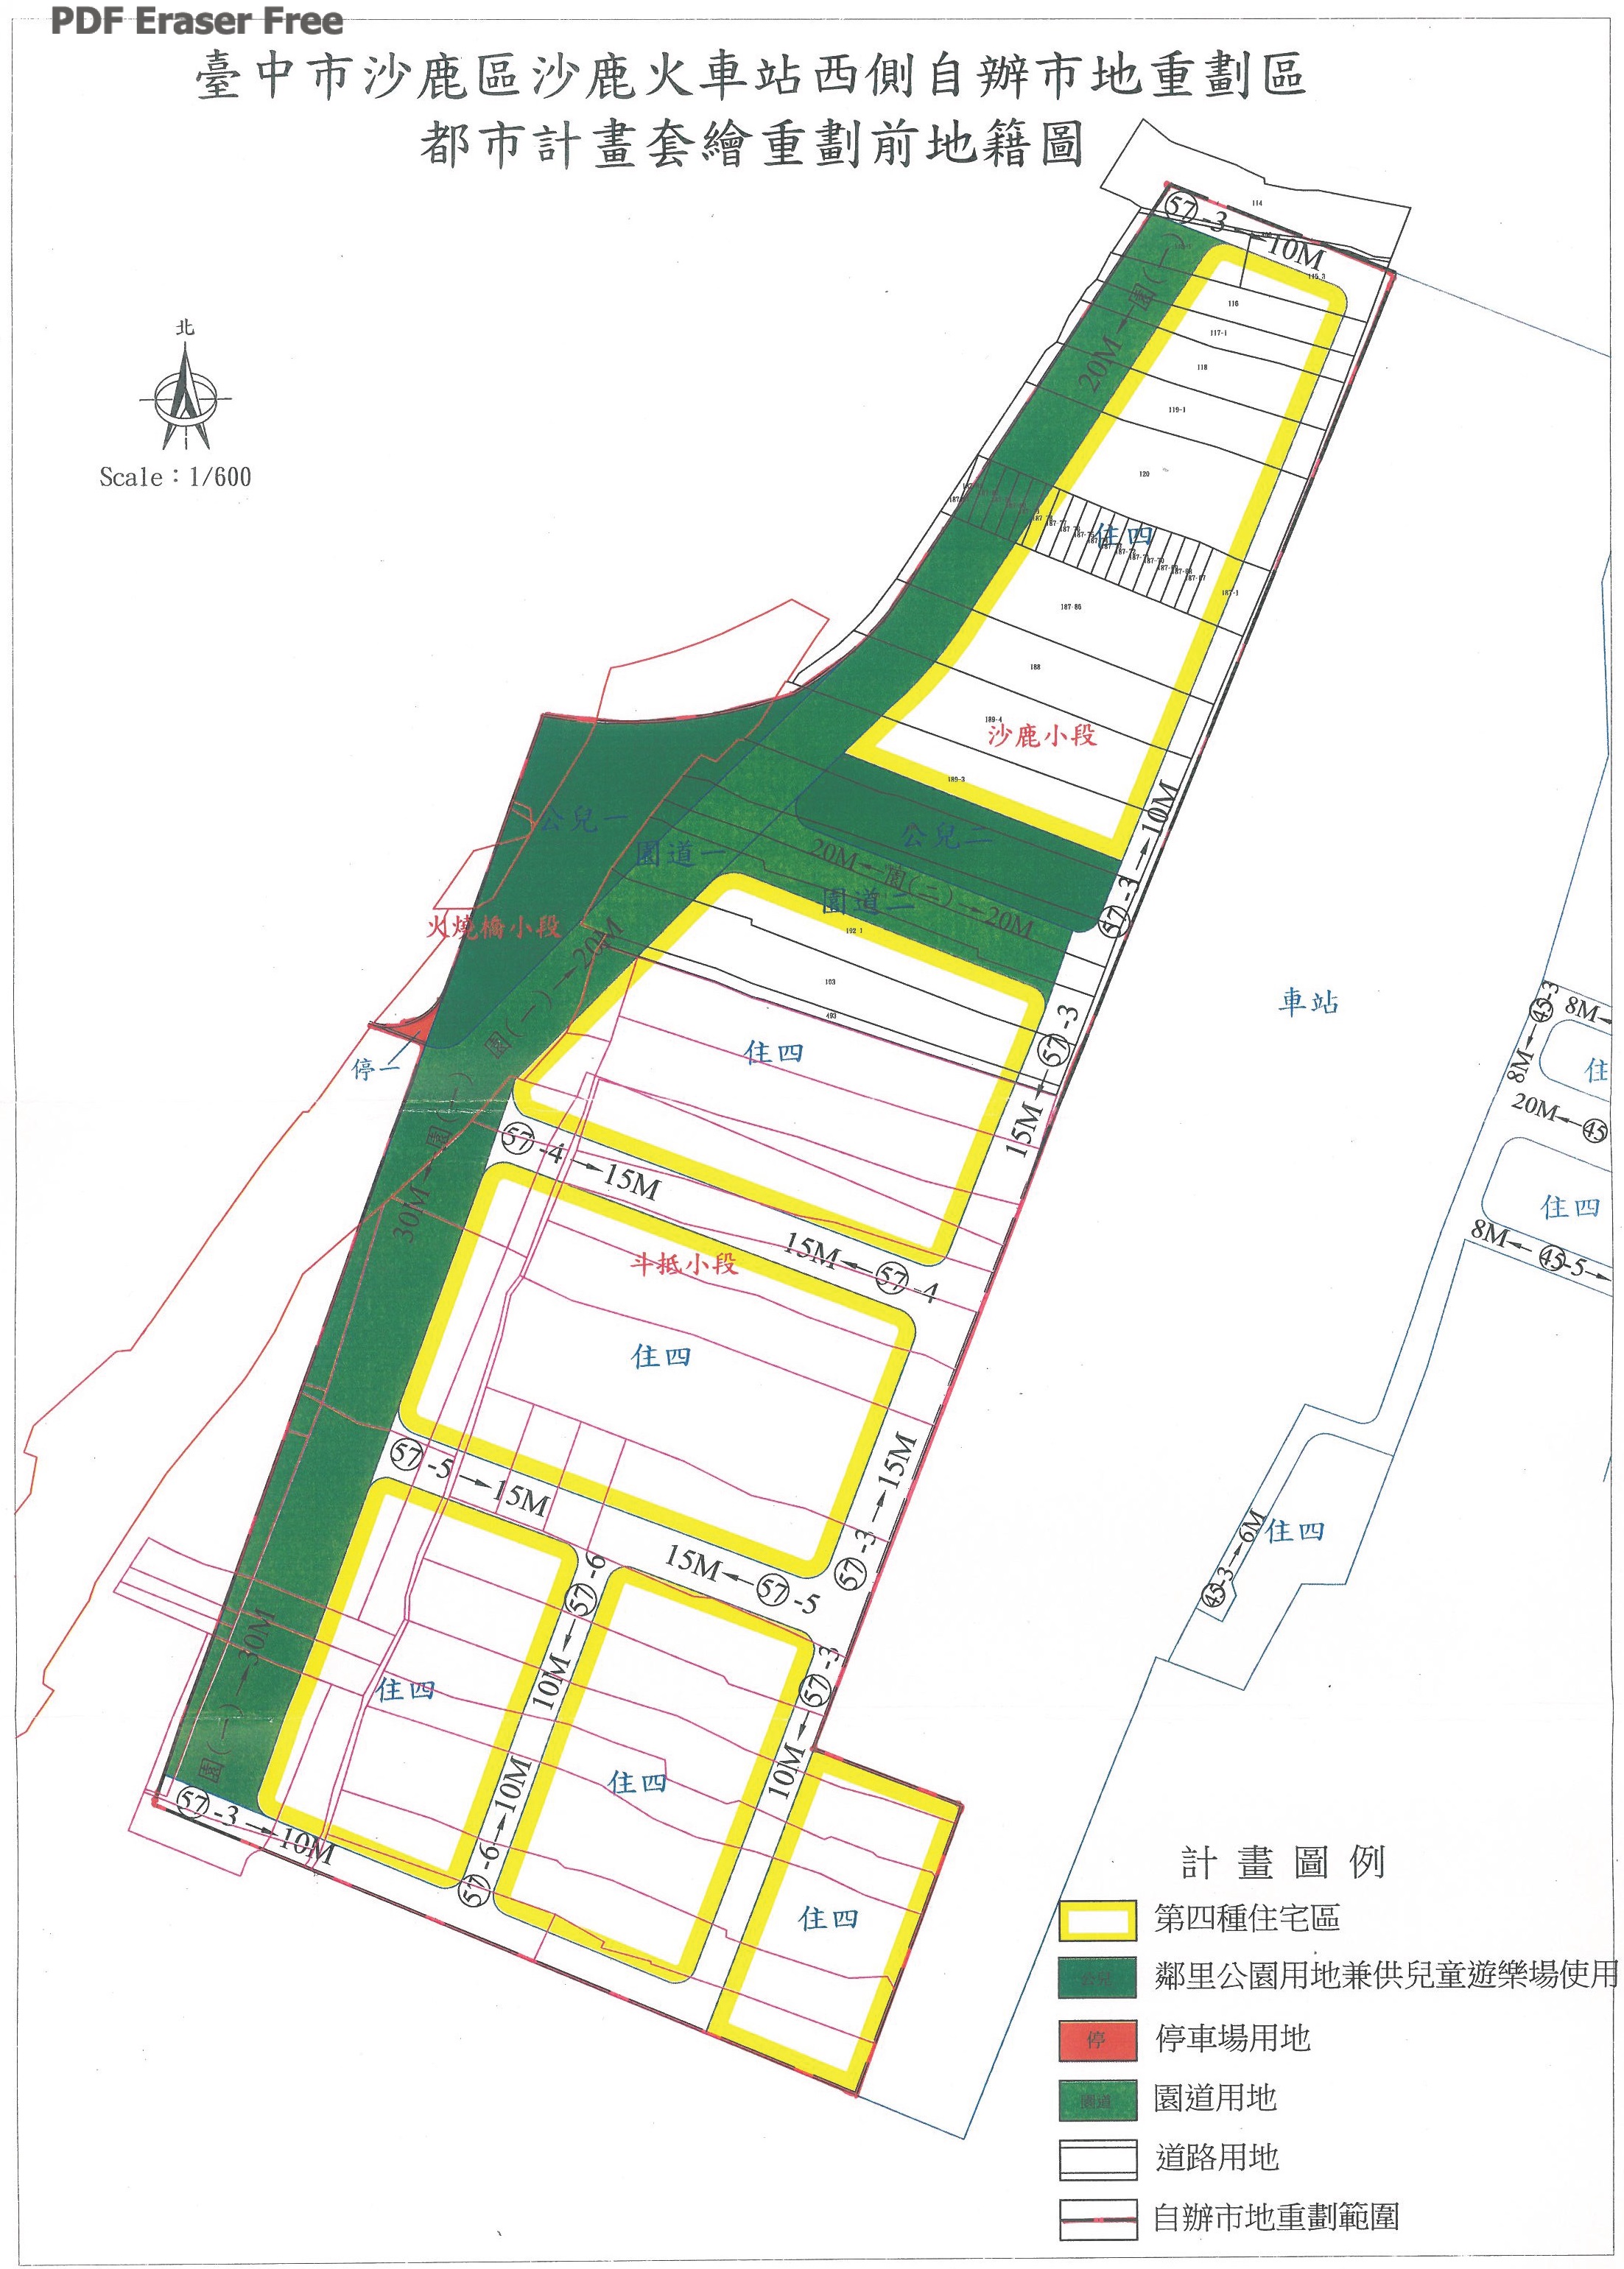 沙鹿區沙鹿火車站西側自辦市地重劃細部計畫圖